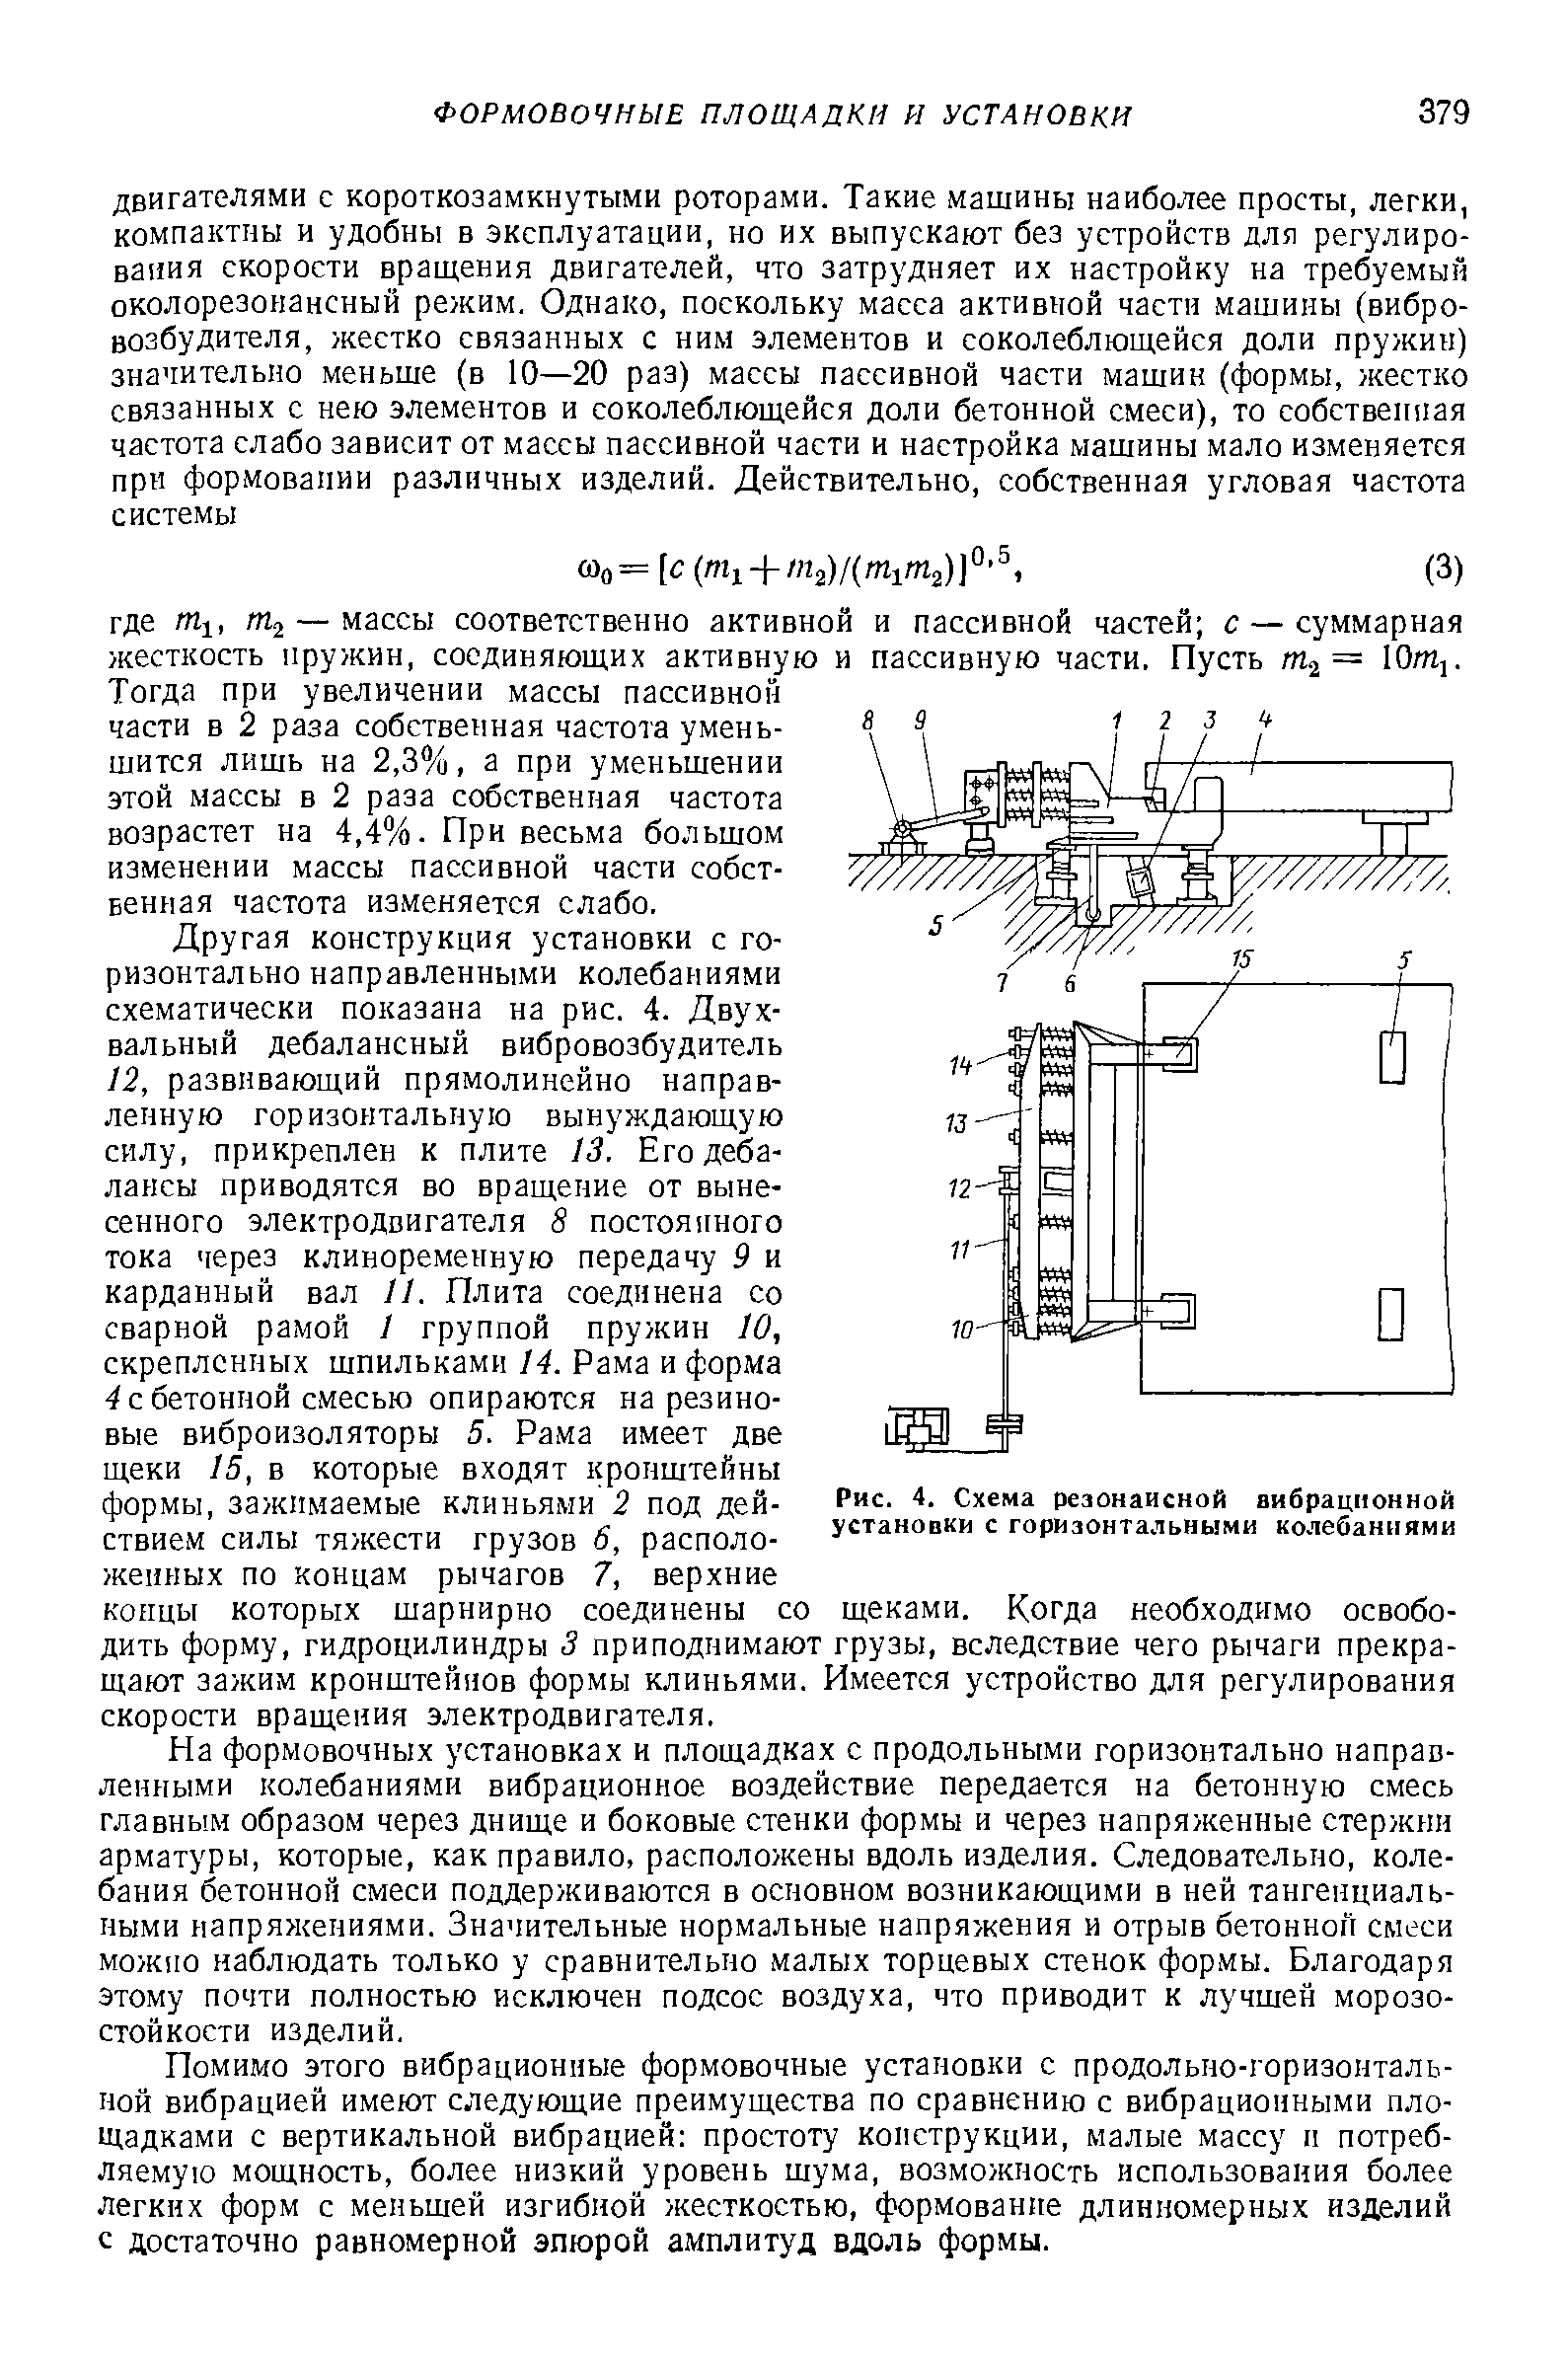 Рис. 4. <a href="/info/321081">Схема резонансной</a> вибрационной установки с горизонтальными колебаниями
